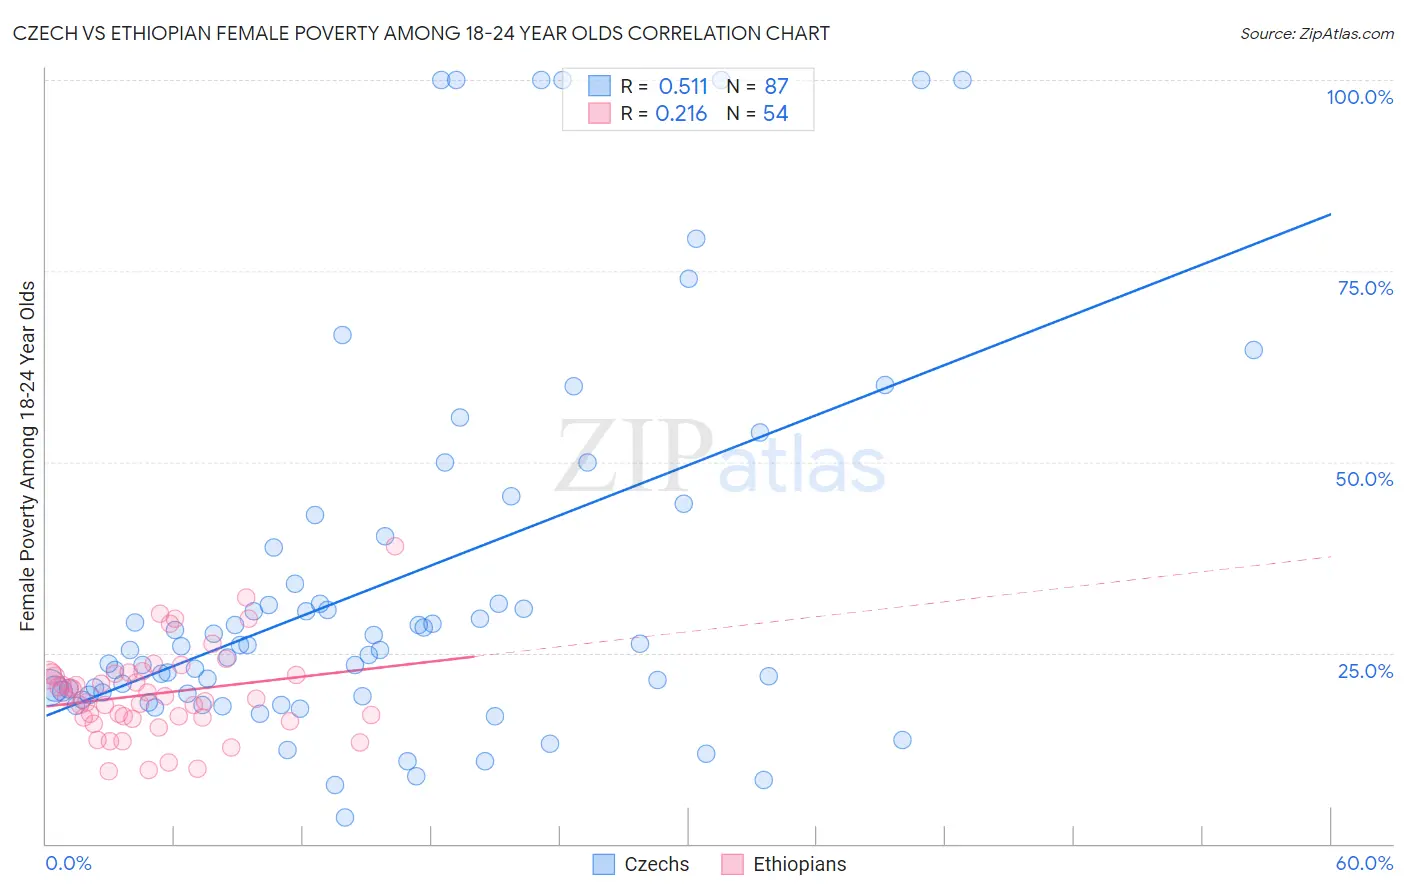 Czech vs Ethiopian Female Poverty Among 18-24 Year Olds